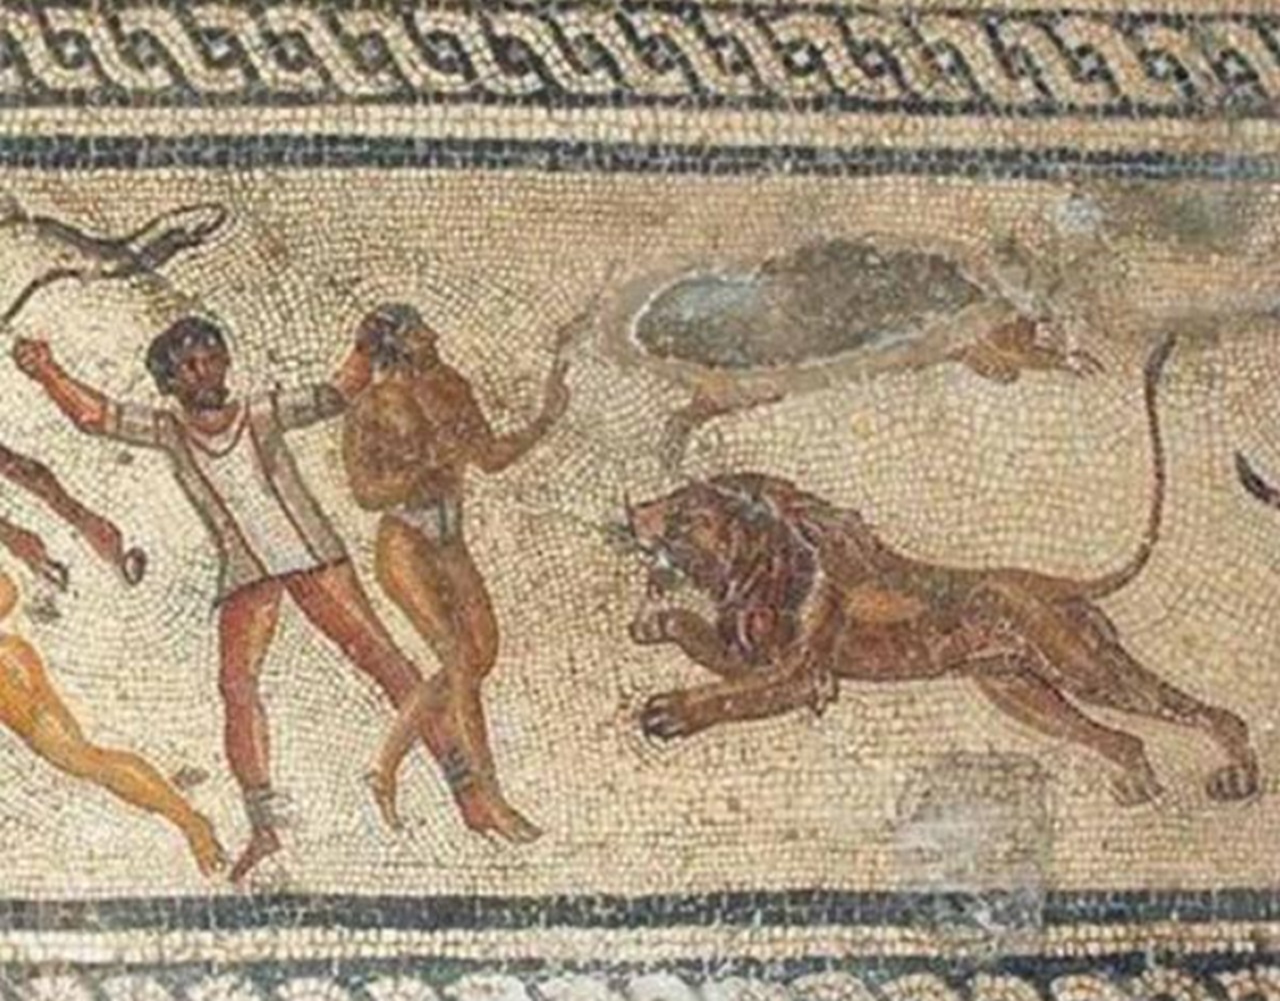 Garamanti mosaico romano con prigionieri di Germa